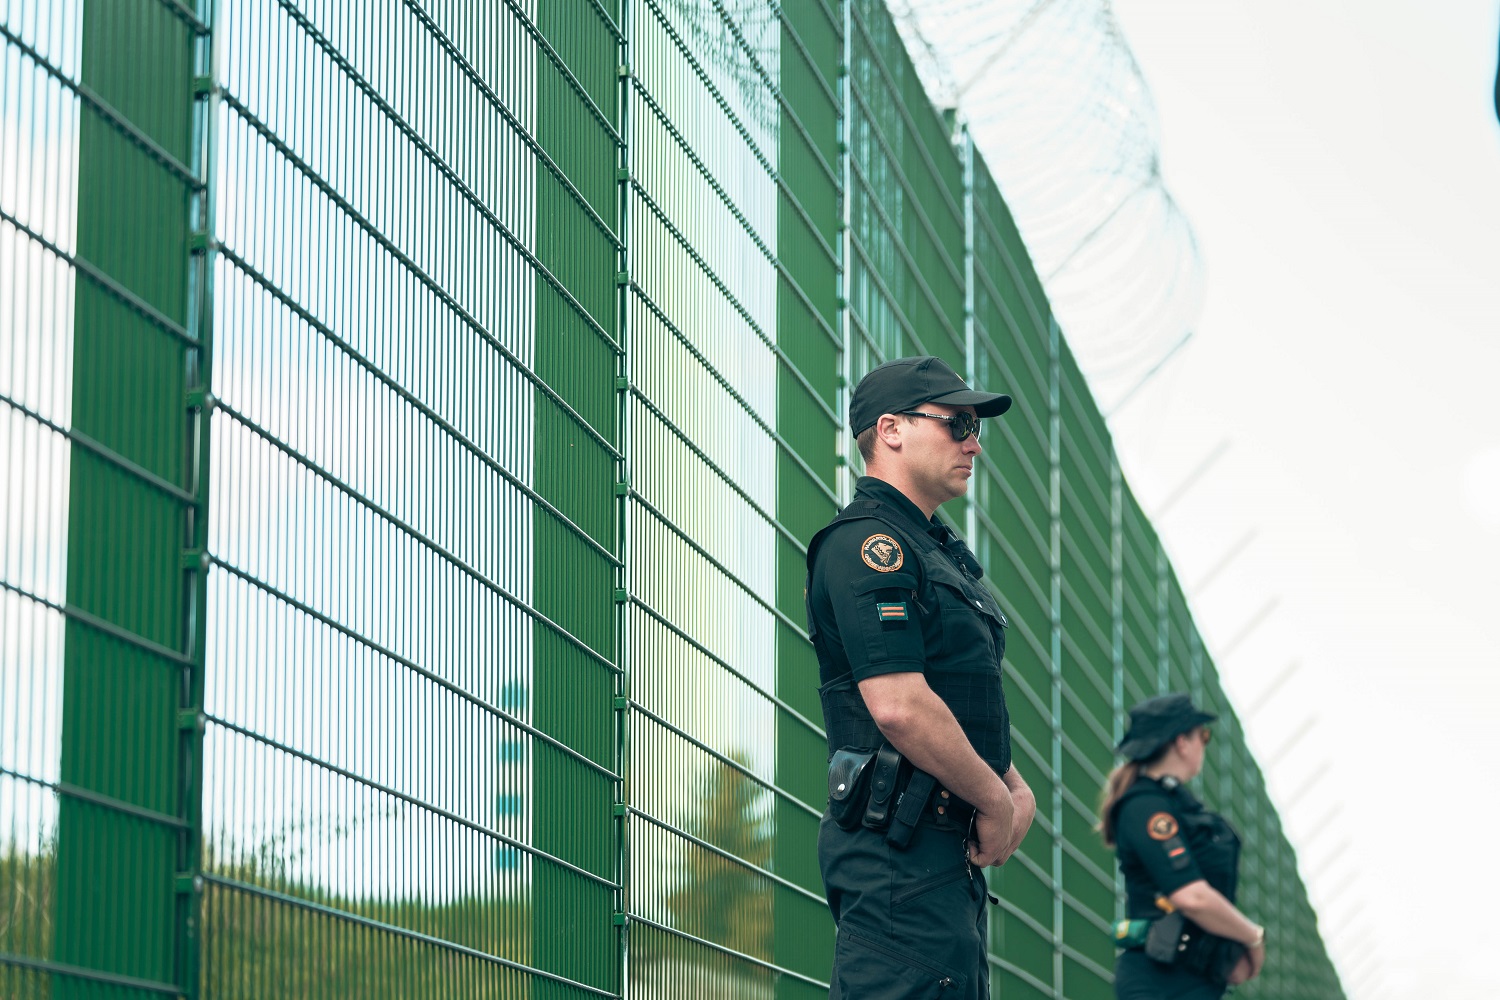 Vihreä esteaita jonka edessä seisoo kaksi rajavartijaa.